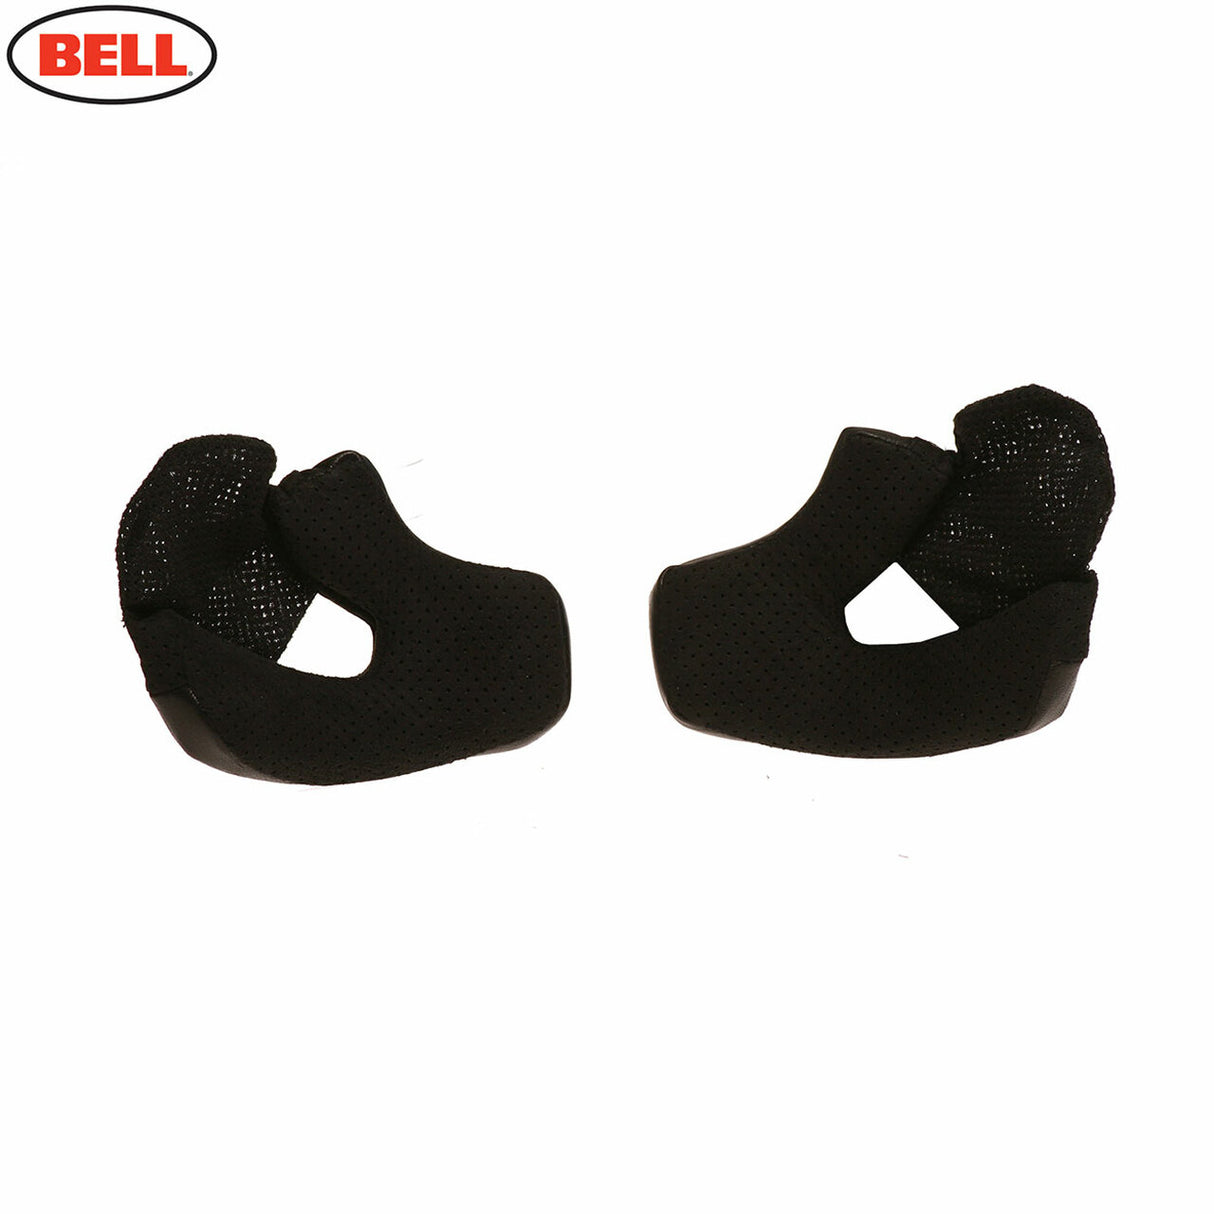 Bell Replacement Bullitt Cheek Pads - Black